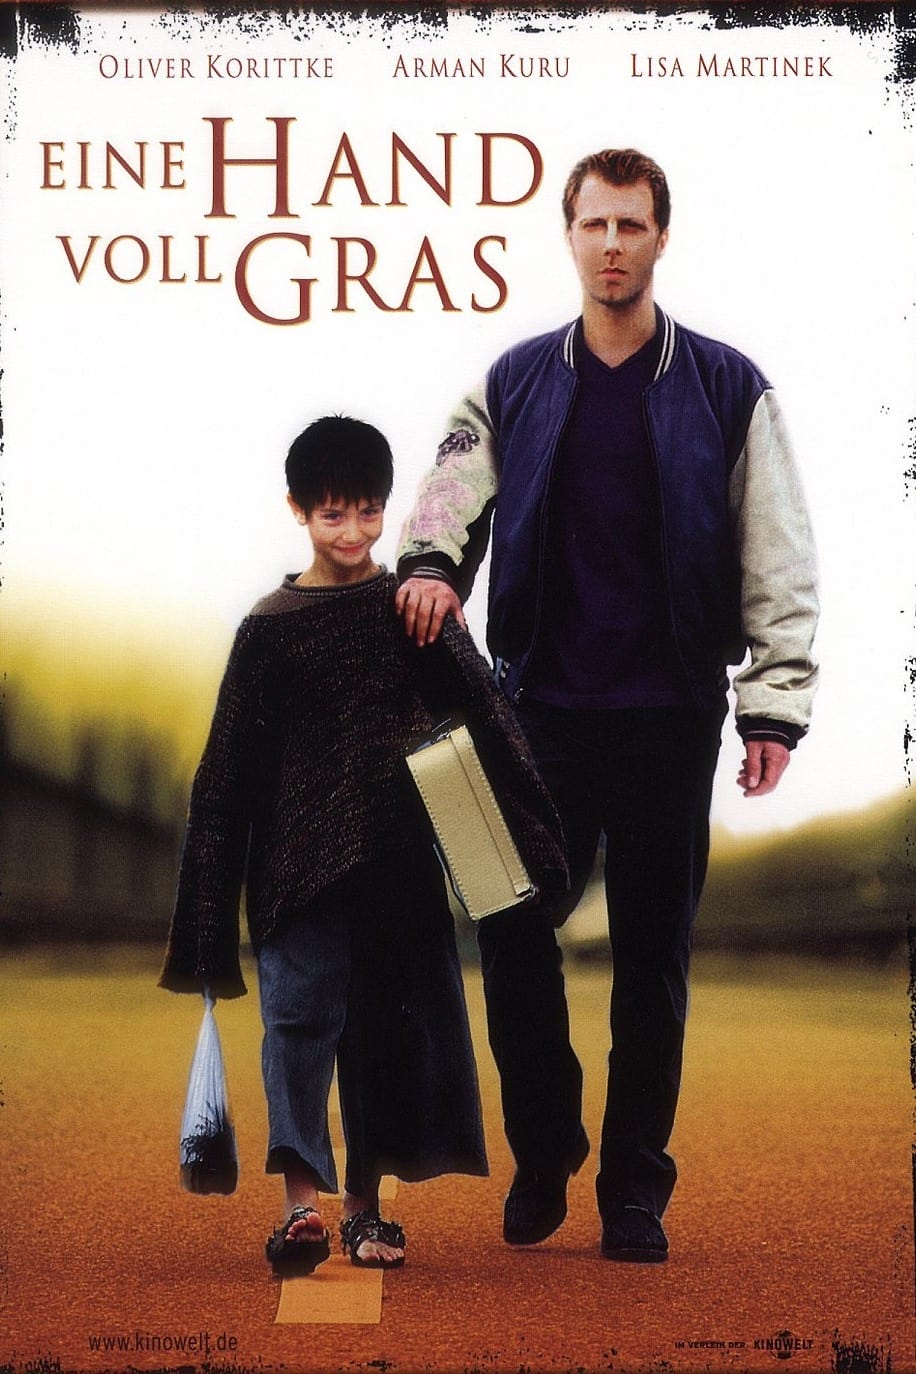 A Handful of Grass (2000)